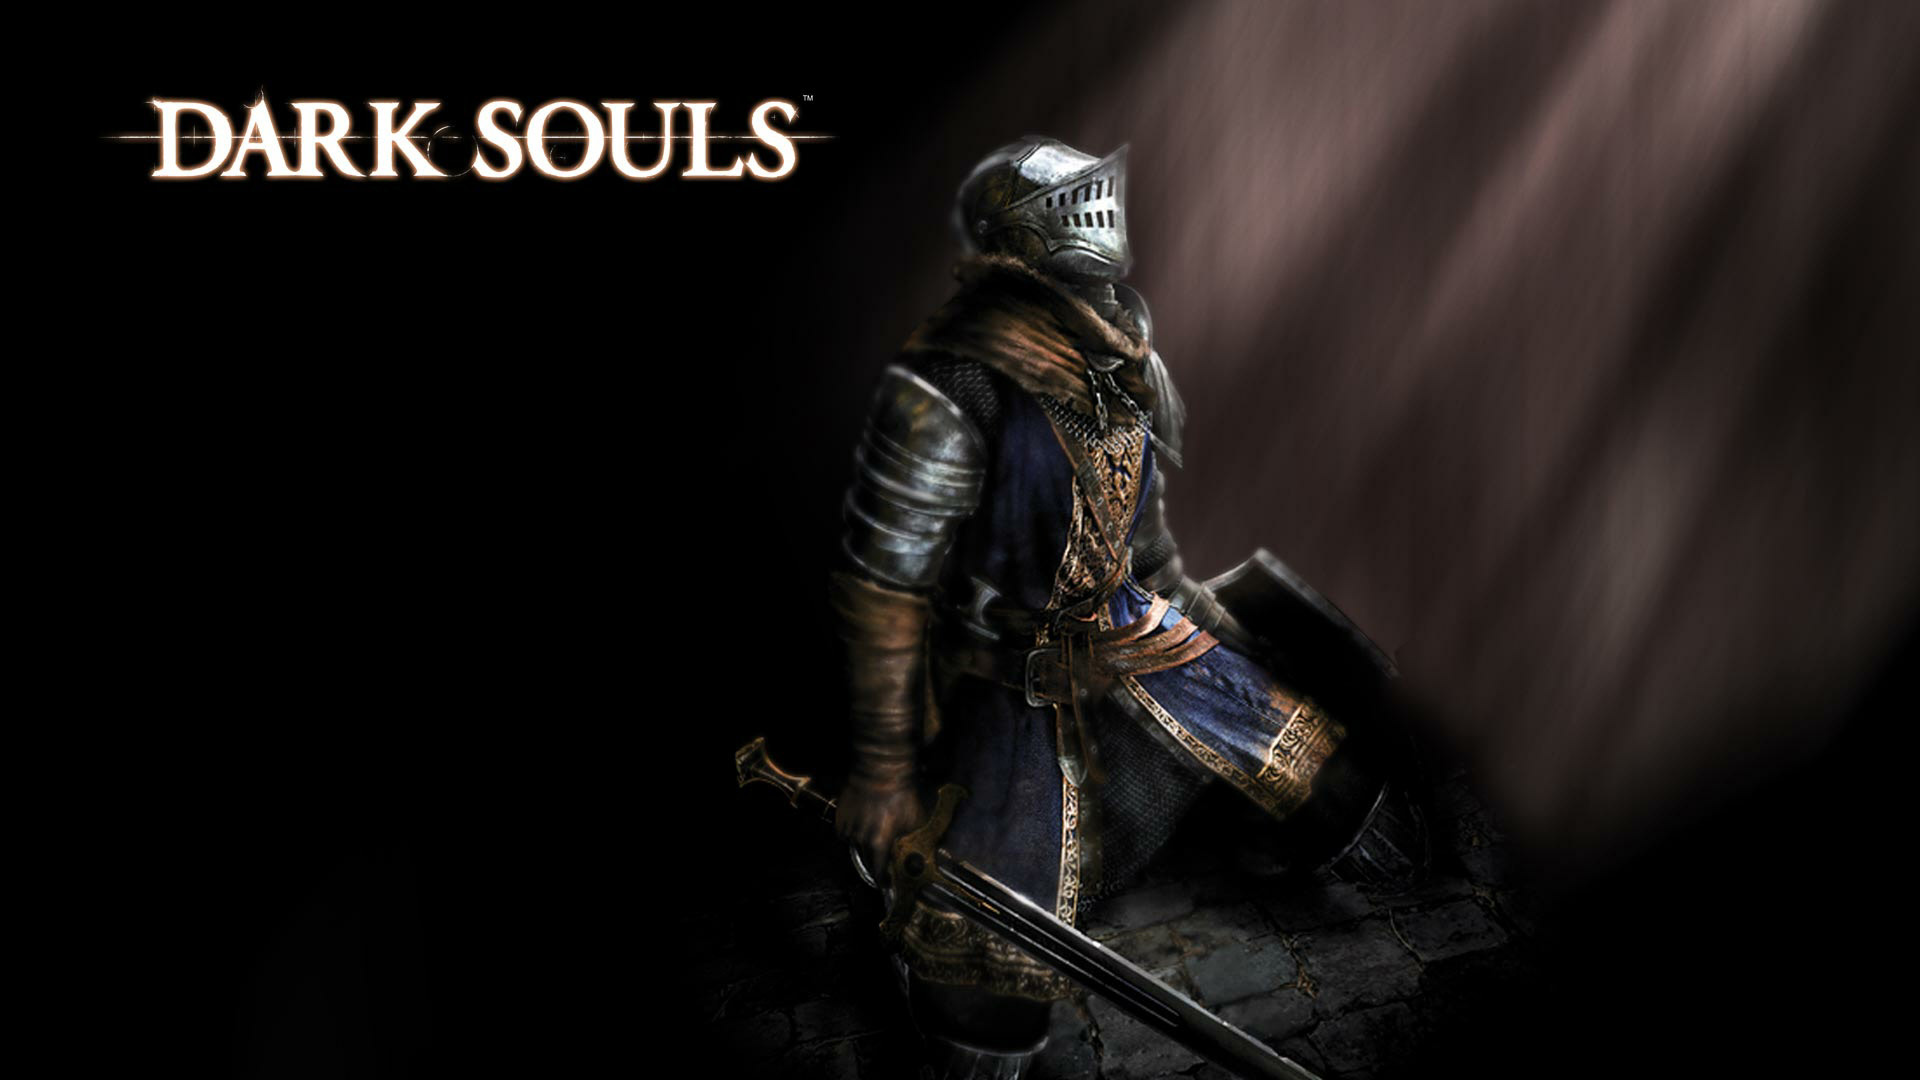 Dark Souls Wallpaper 1080p Image